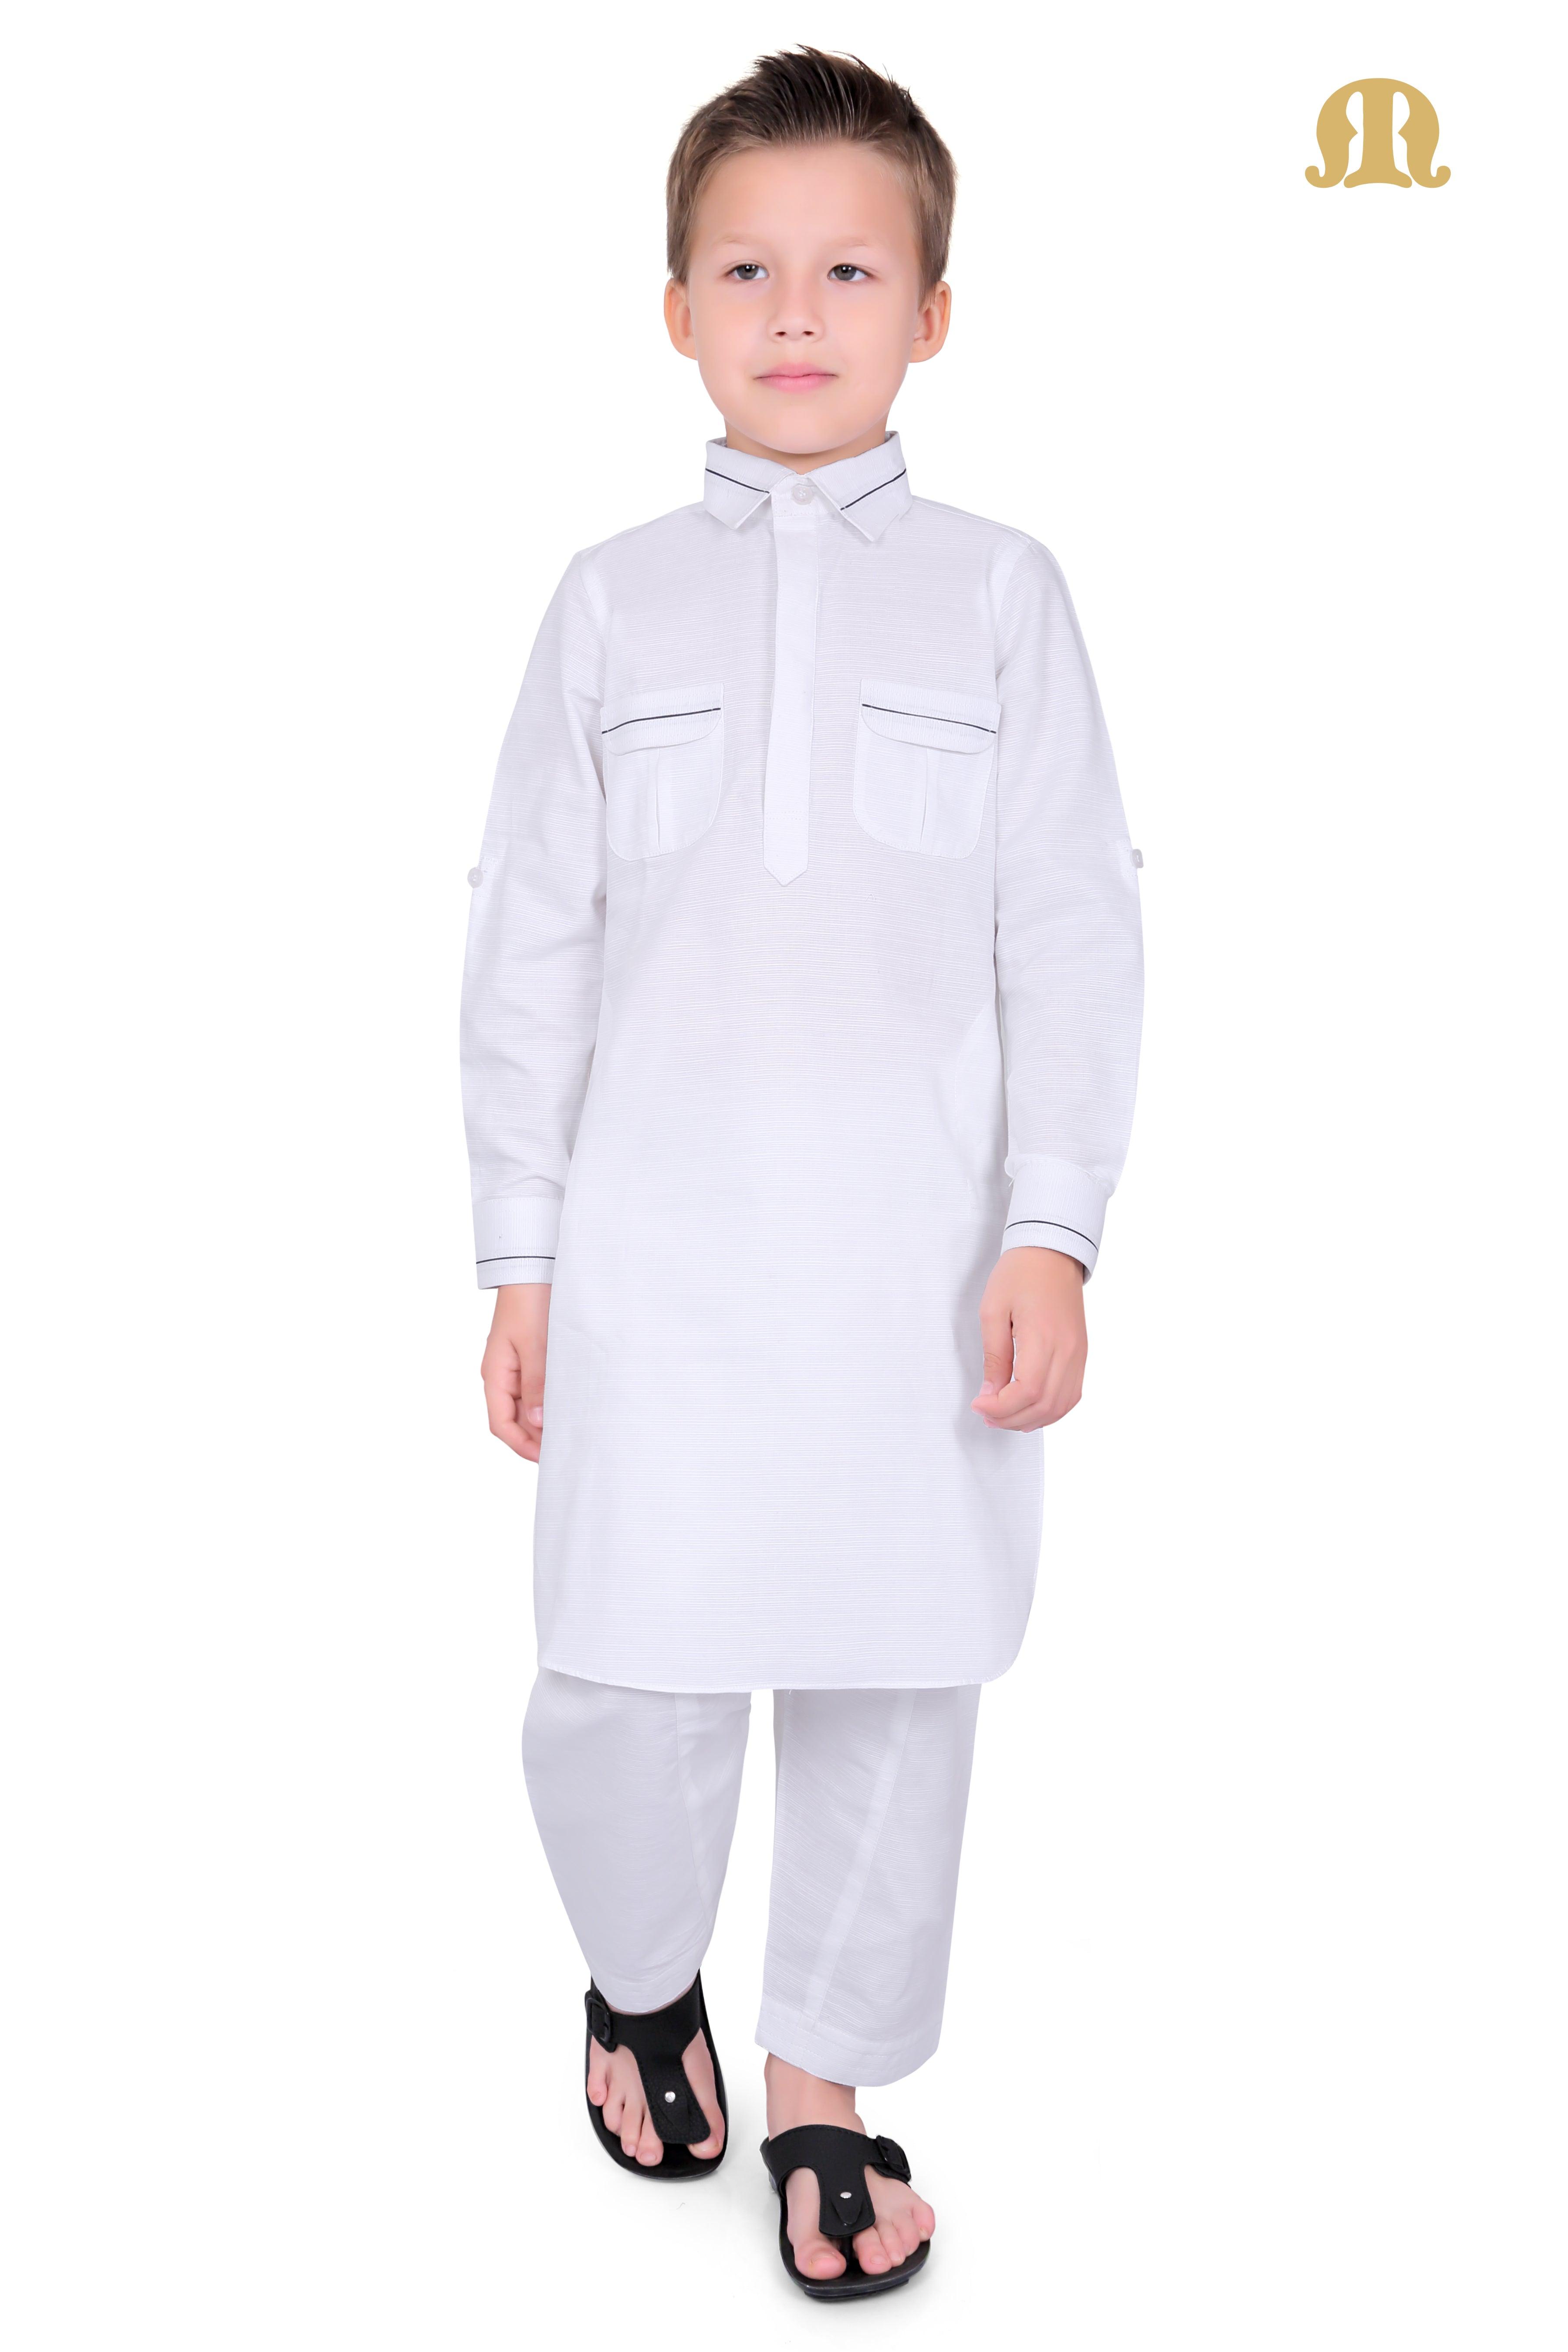 White Riwaya Pathani Suit for Boys - Mashroo